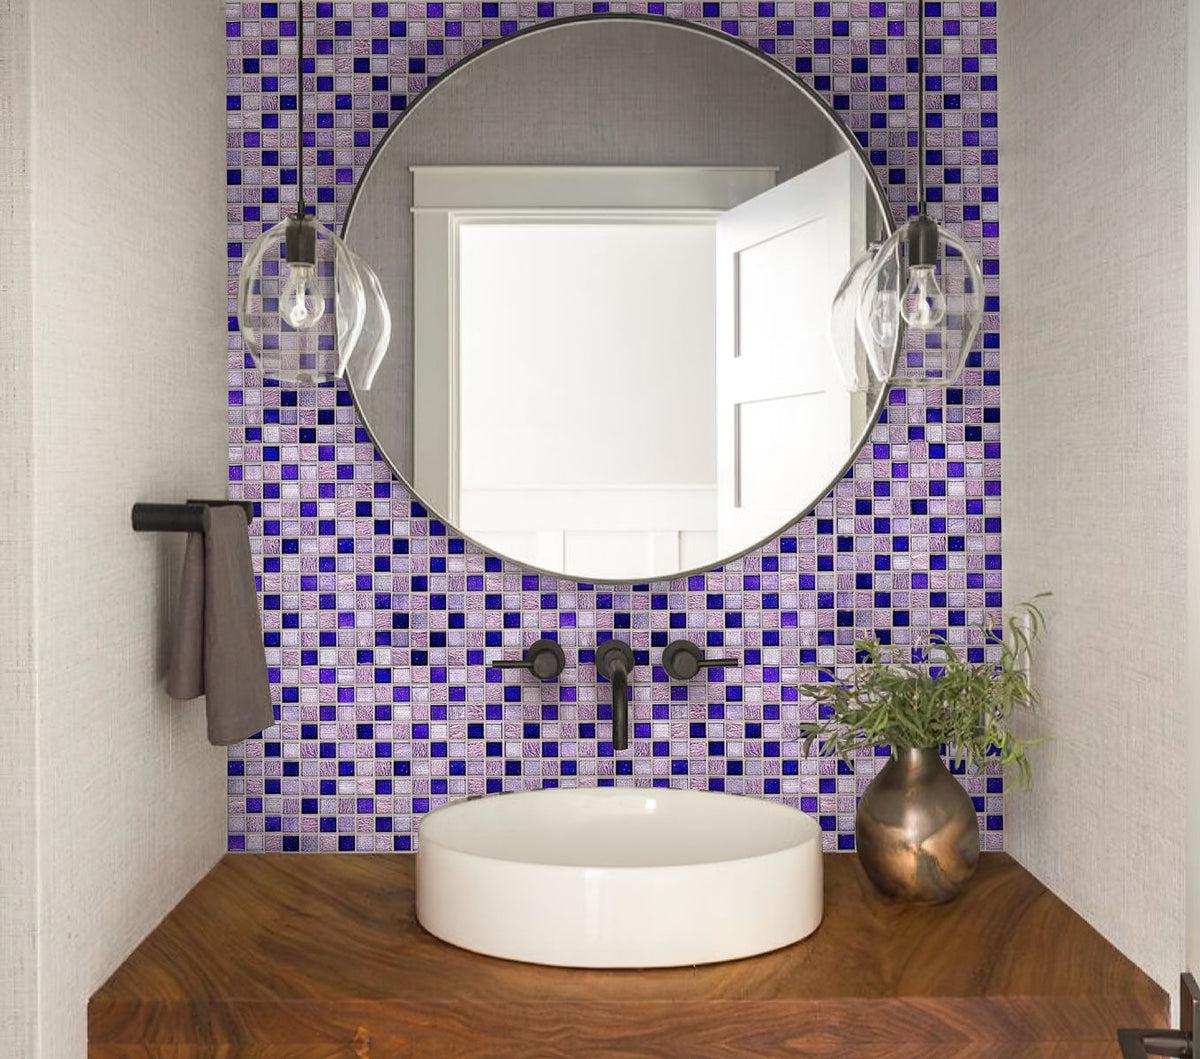 Washbasin with Eclectic Purple Square Mosaic Tile backsplash